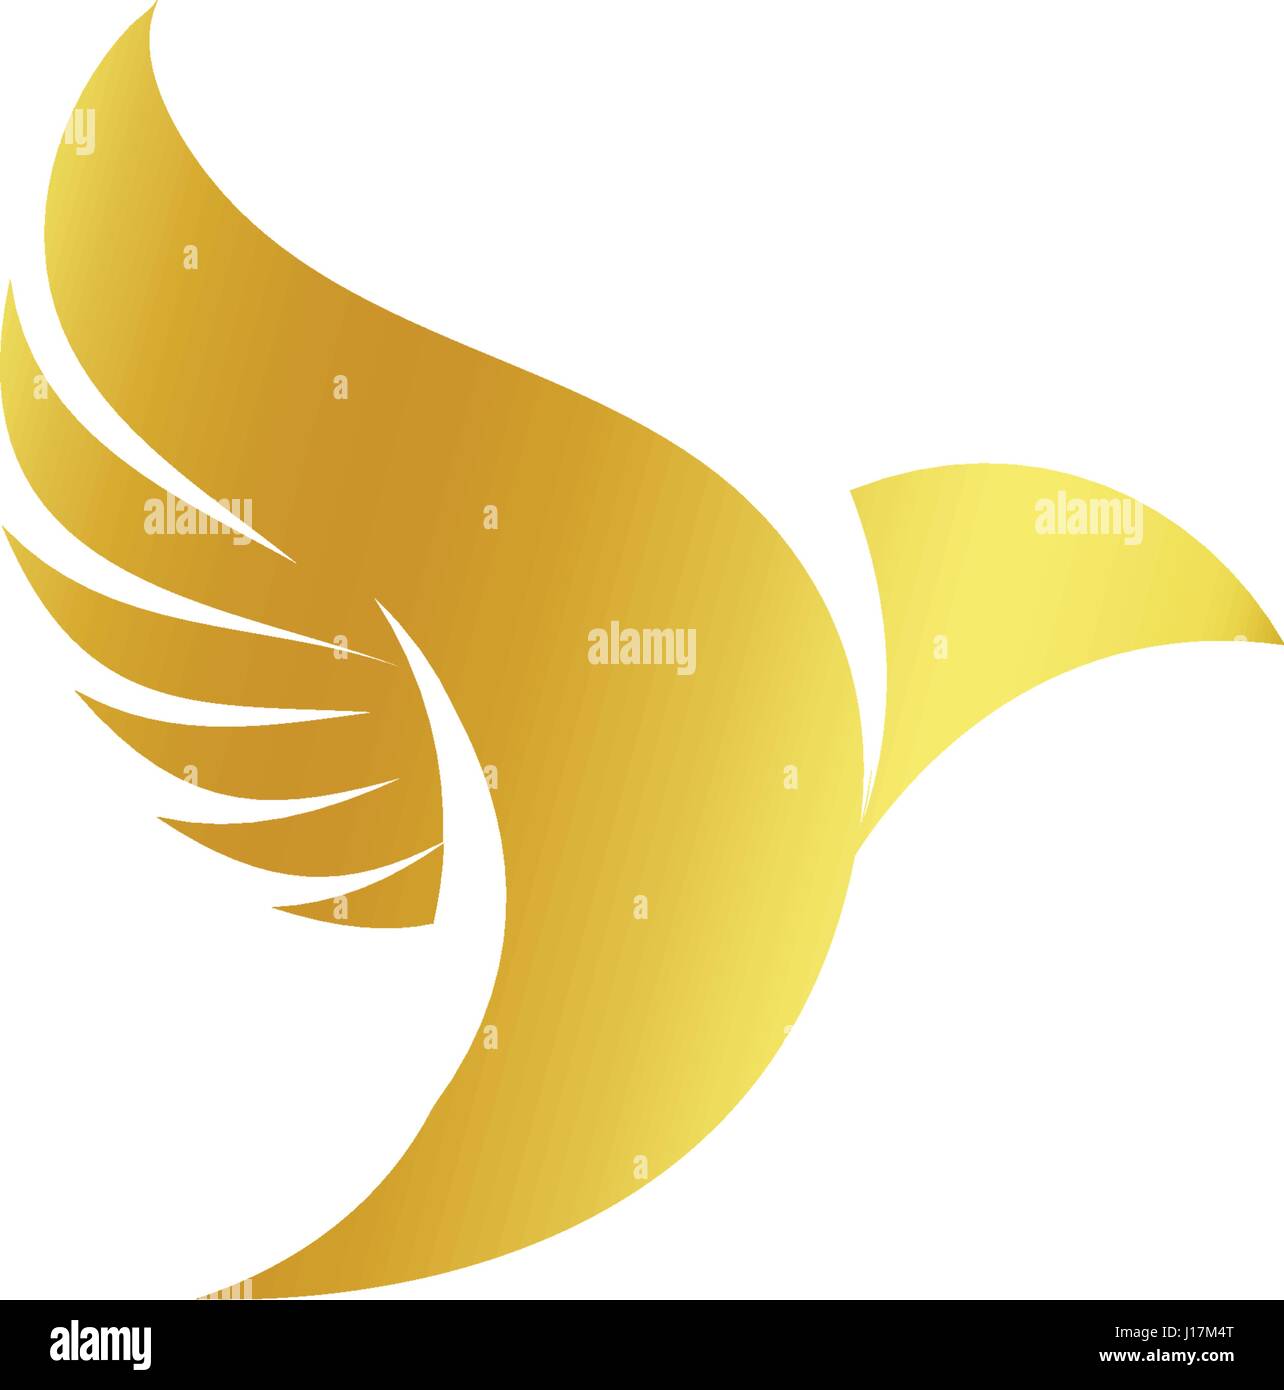 Abstract isolato colore oro di sagome di uccelli logo su sfondo bianco, le ali di piume e logotipo elementi imposta illustrazione vettoriale Illustrazione Vettoriale